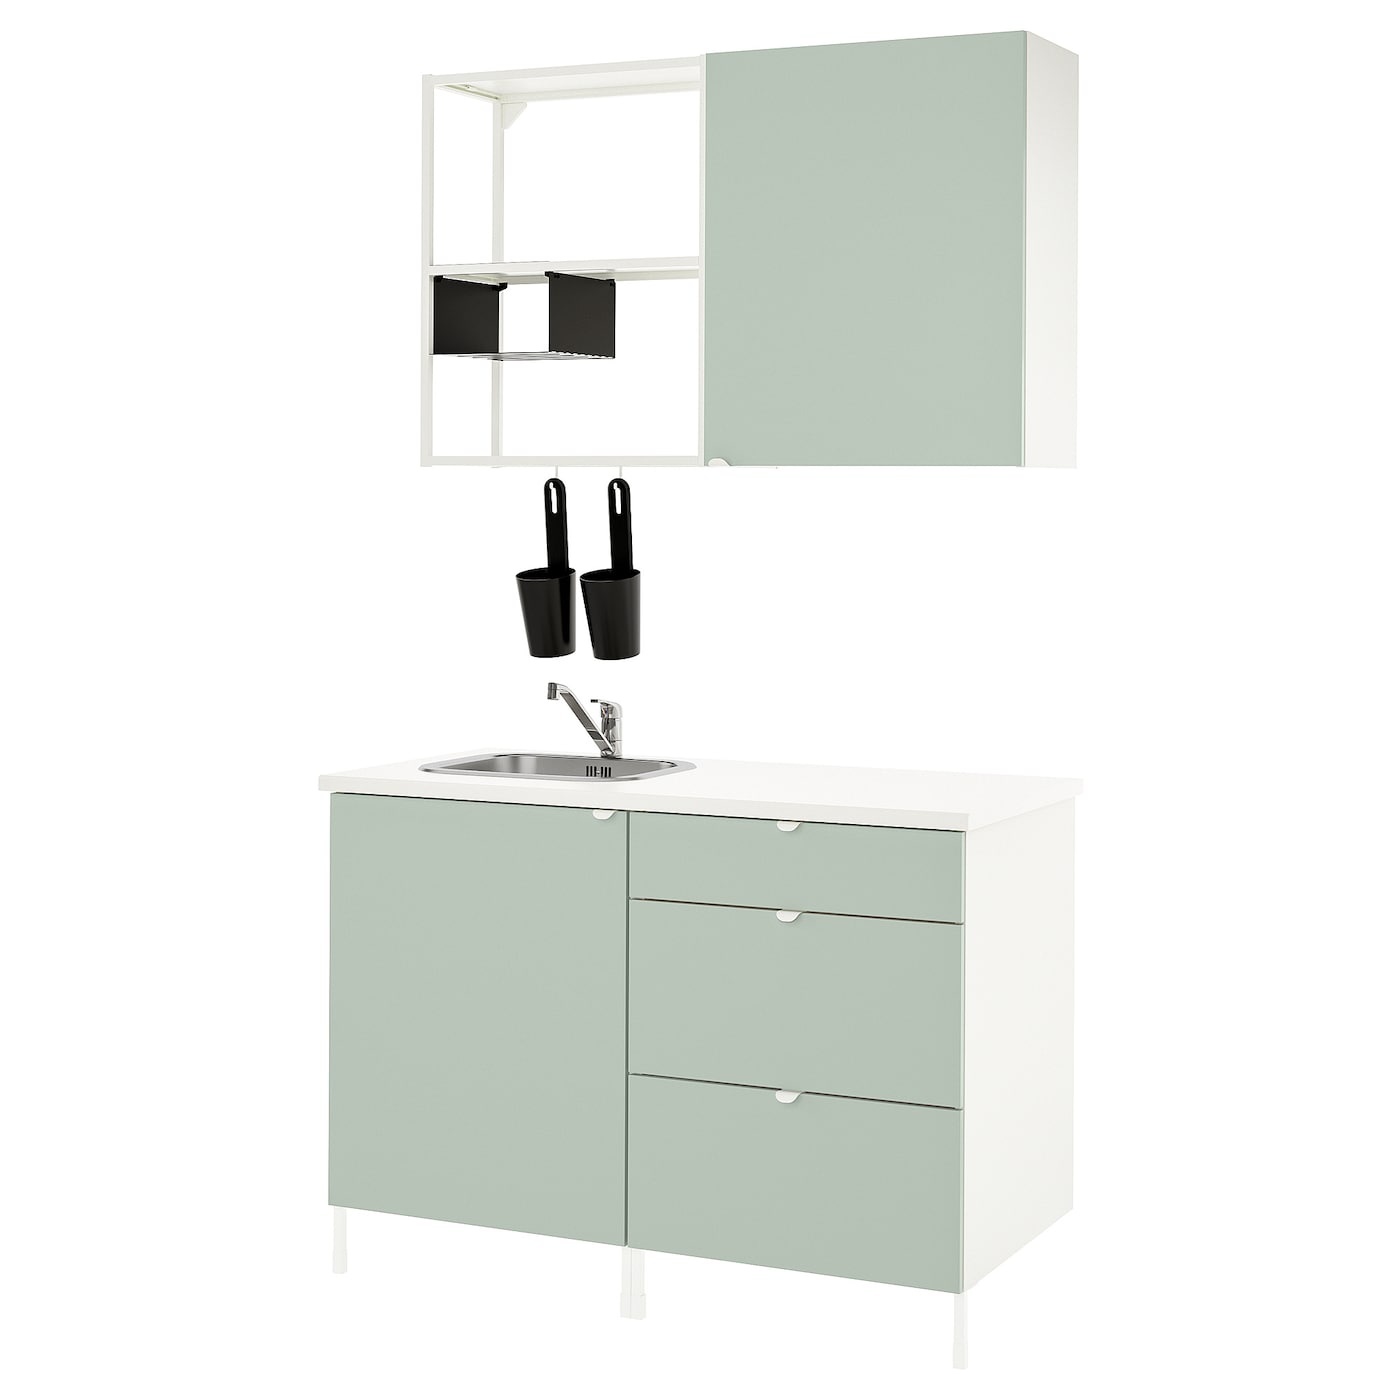 Кухня -  ENHET  IKEA/ ЭНХЕТ ИКЕА, 222х123 см, белый/зеленый